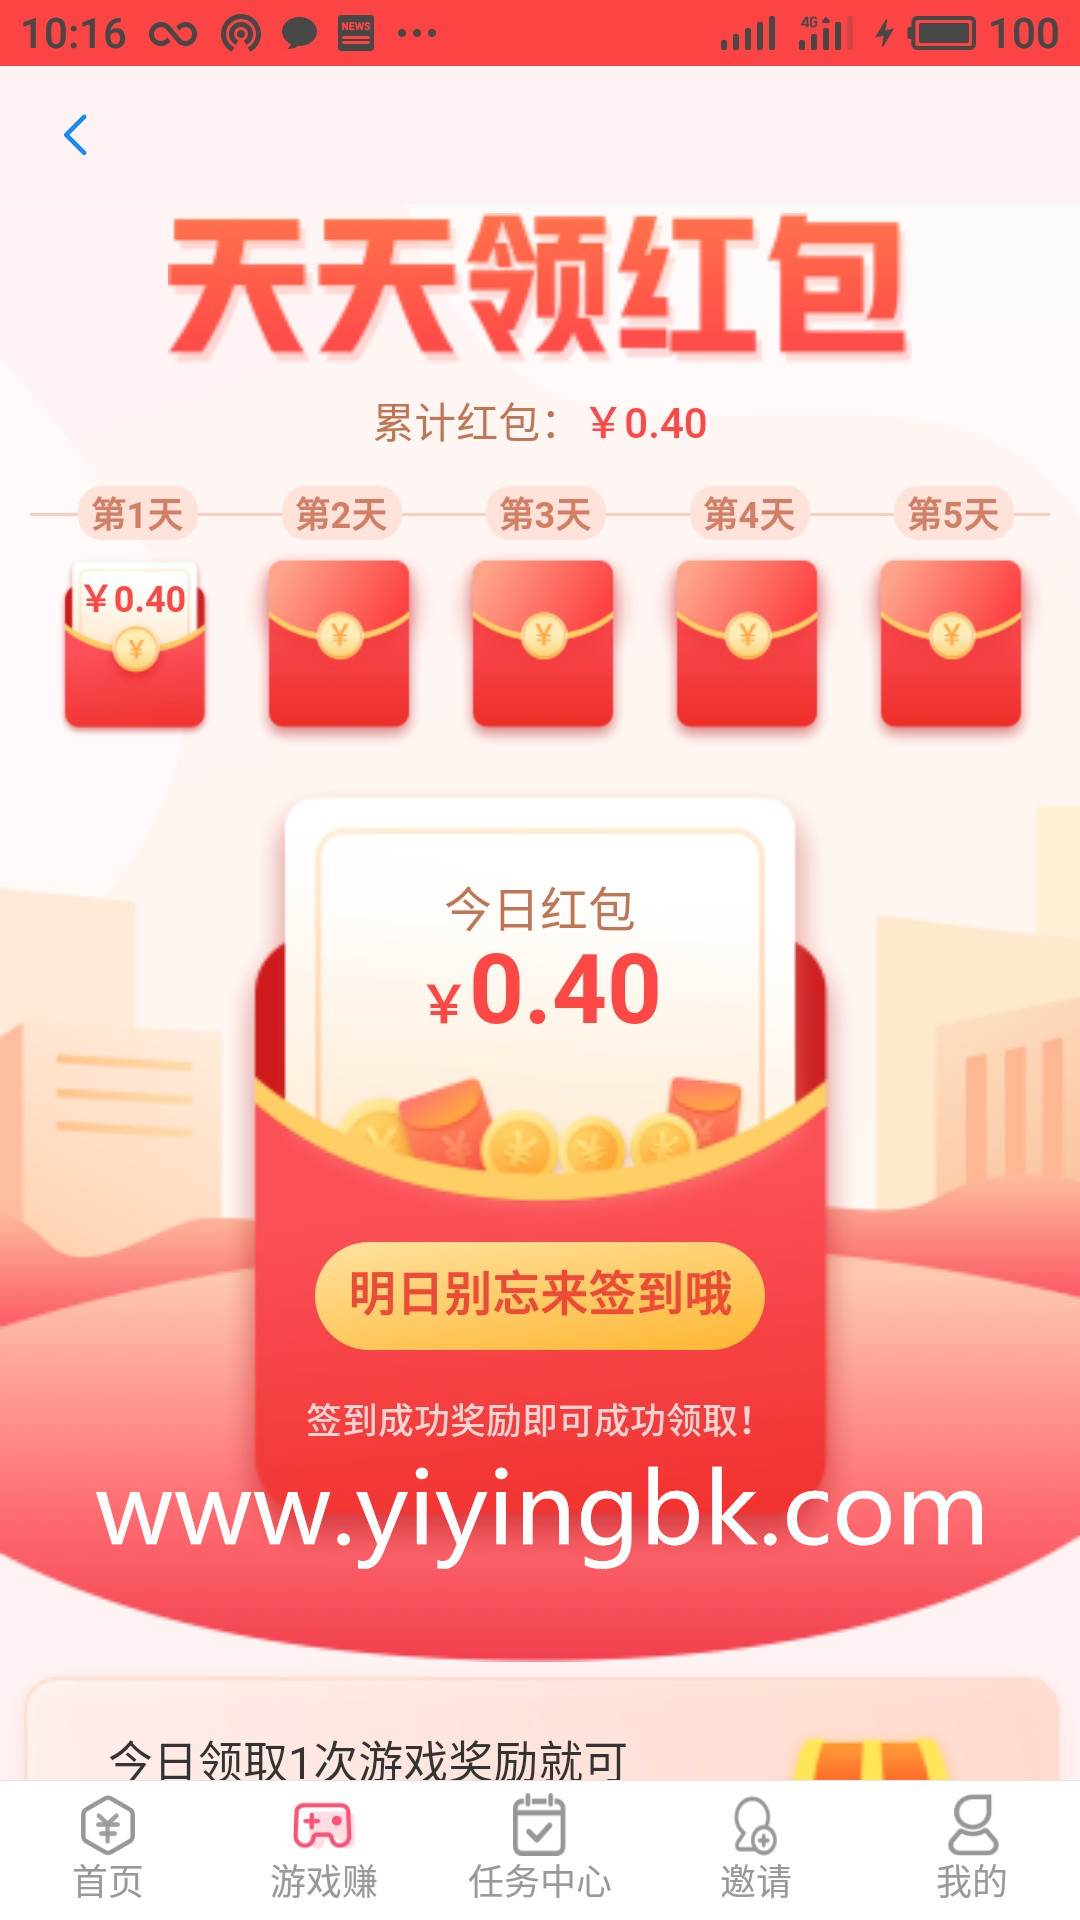 苹果ios和安卓手机天天签到领现金红包，可以提现。www.yiyingbk.com